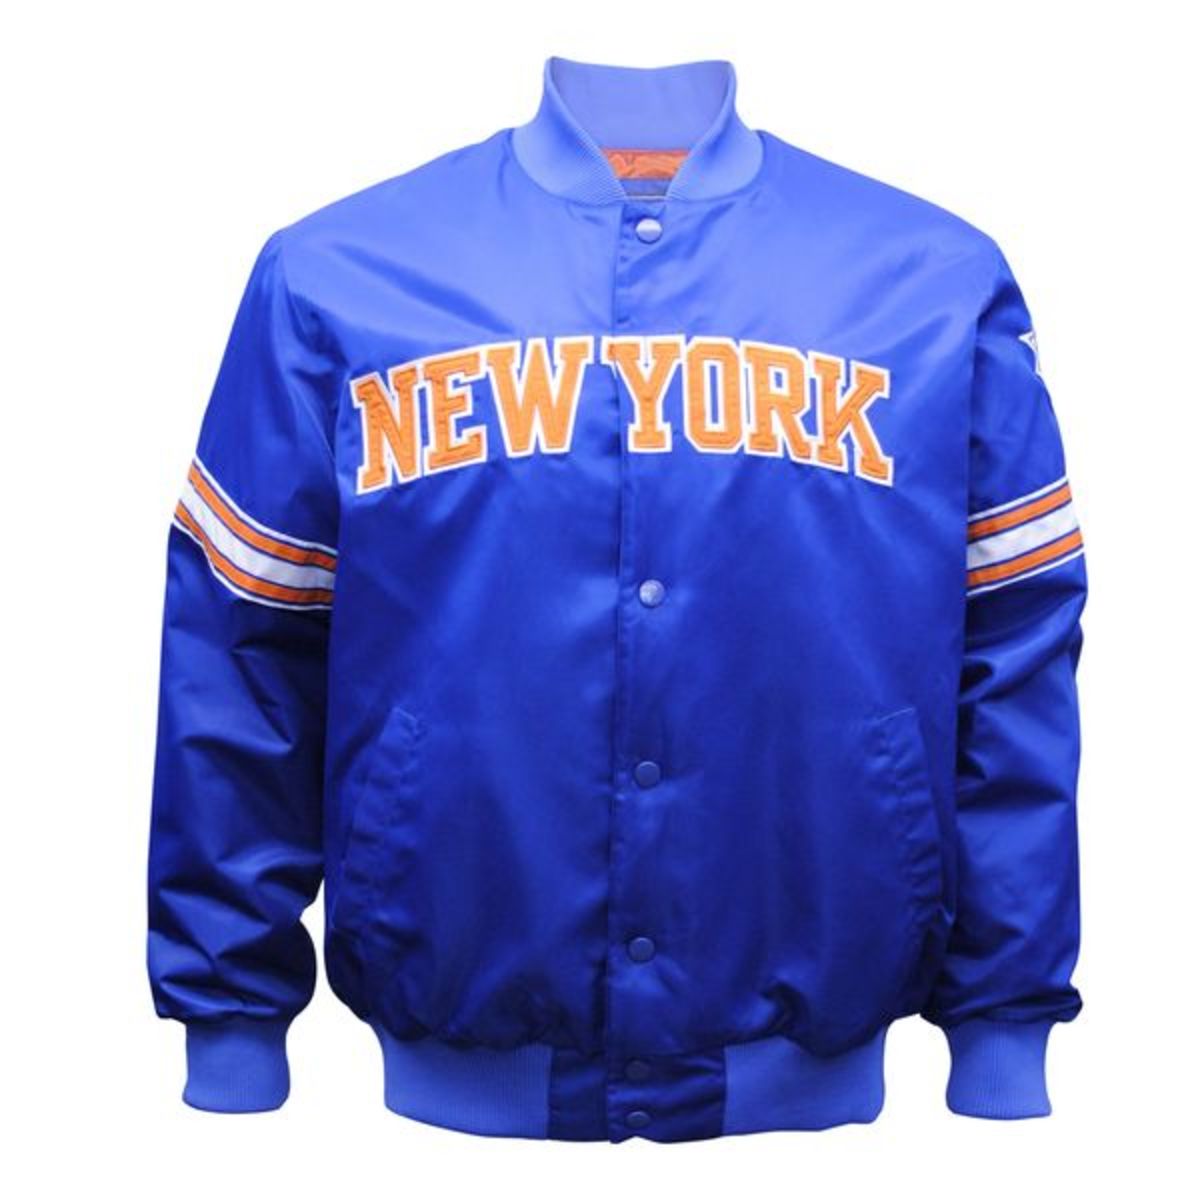 New York Knicks Starter Jacket $160 Pullover Coat Throwback OG